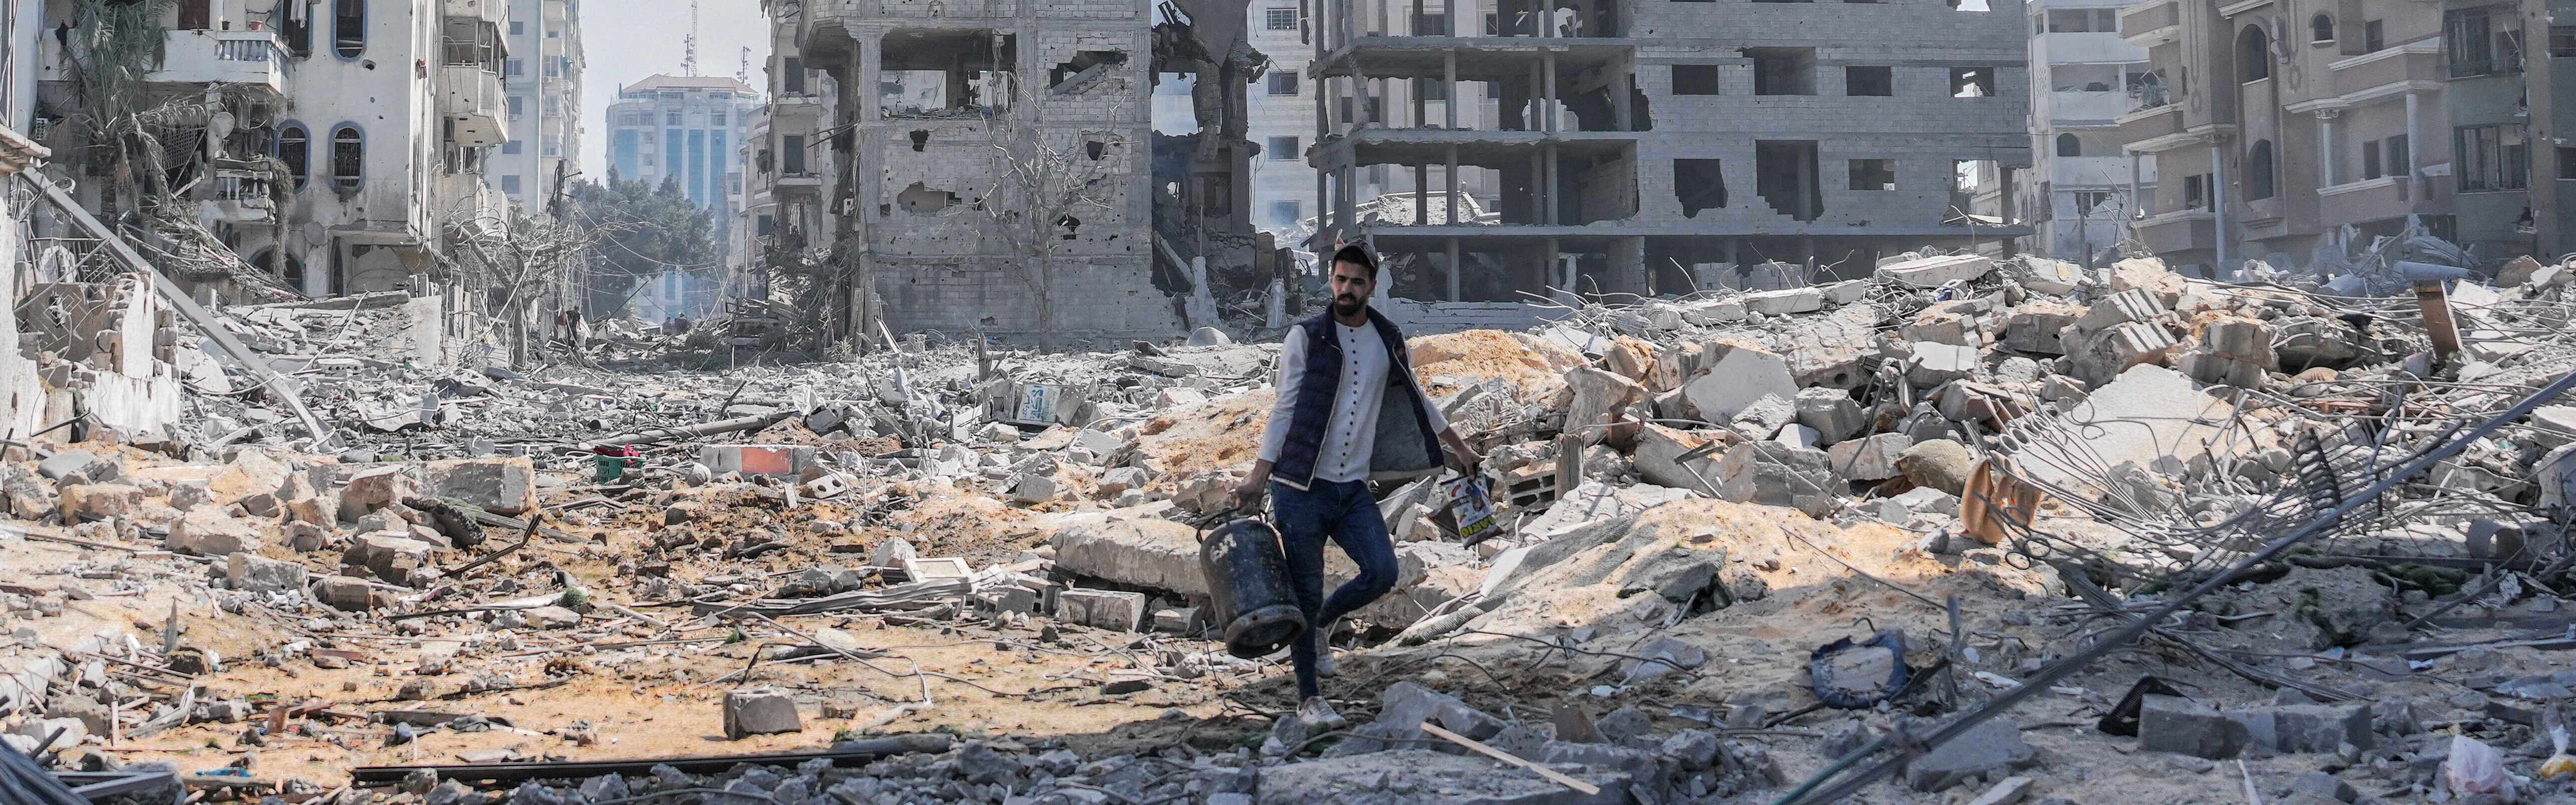 Zerstörung im Gazastreifen: Mann vor Trümmern